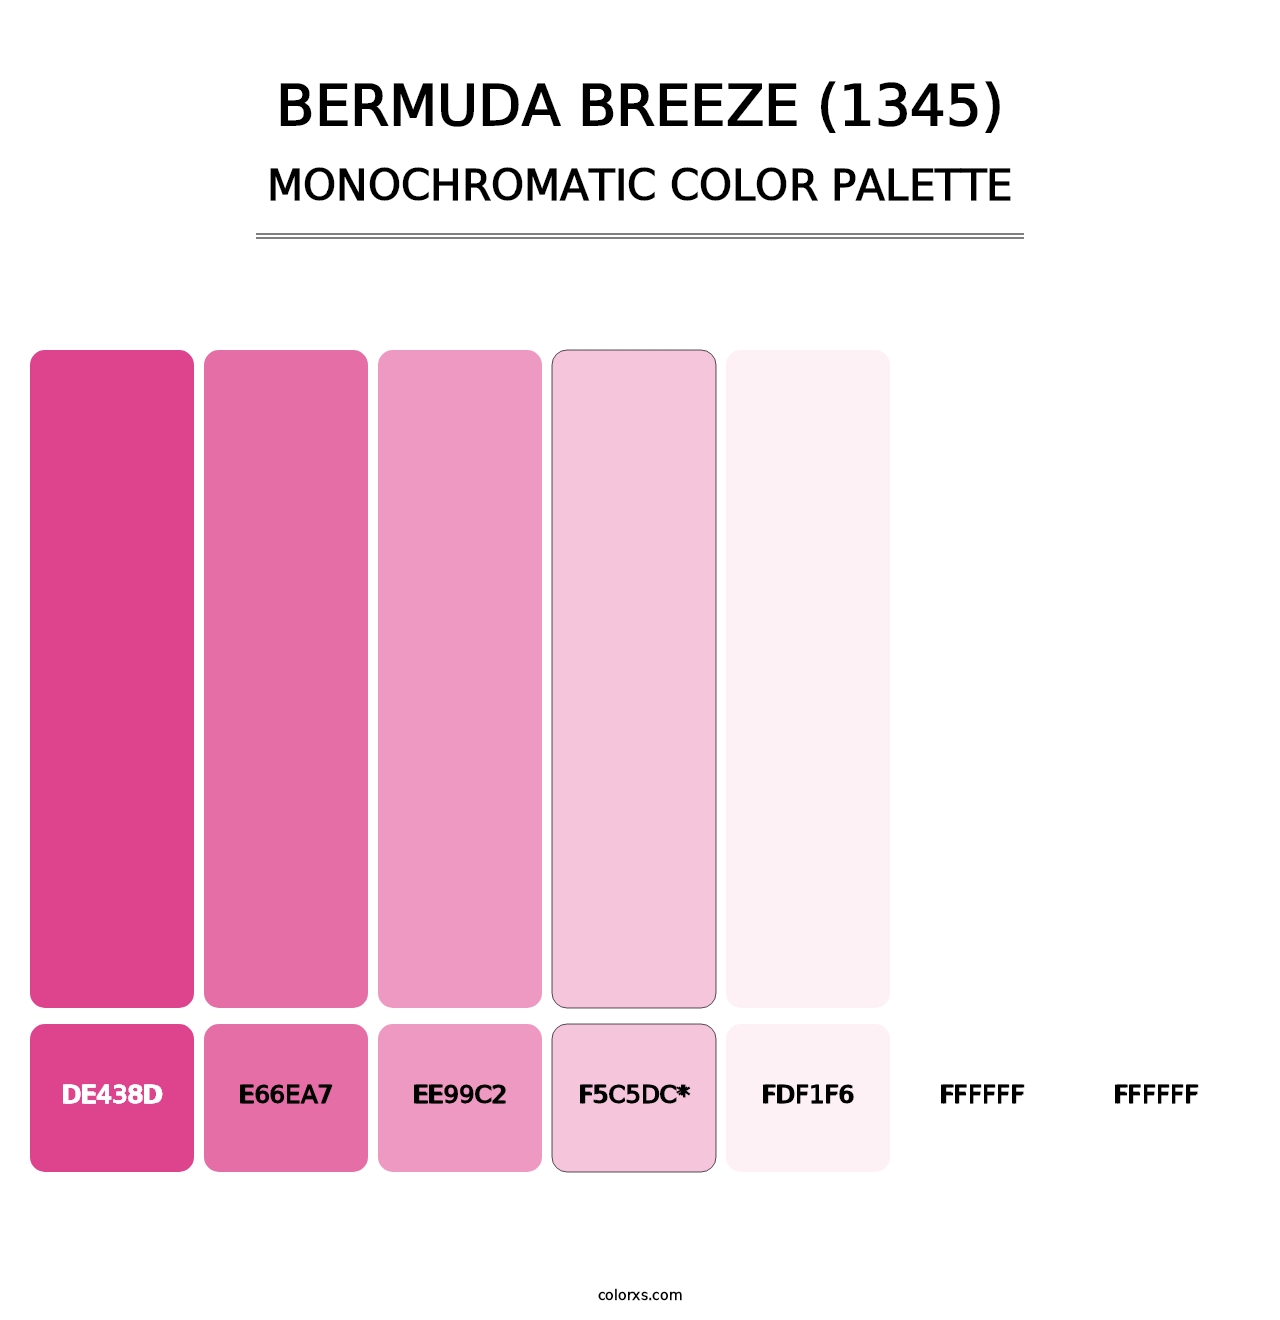 Bermuda Breeze (1345) - Monochromatic Color Palette